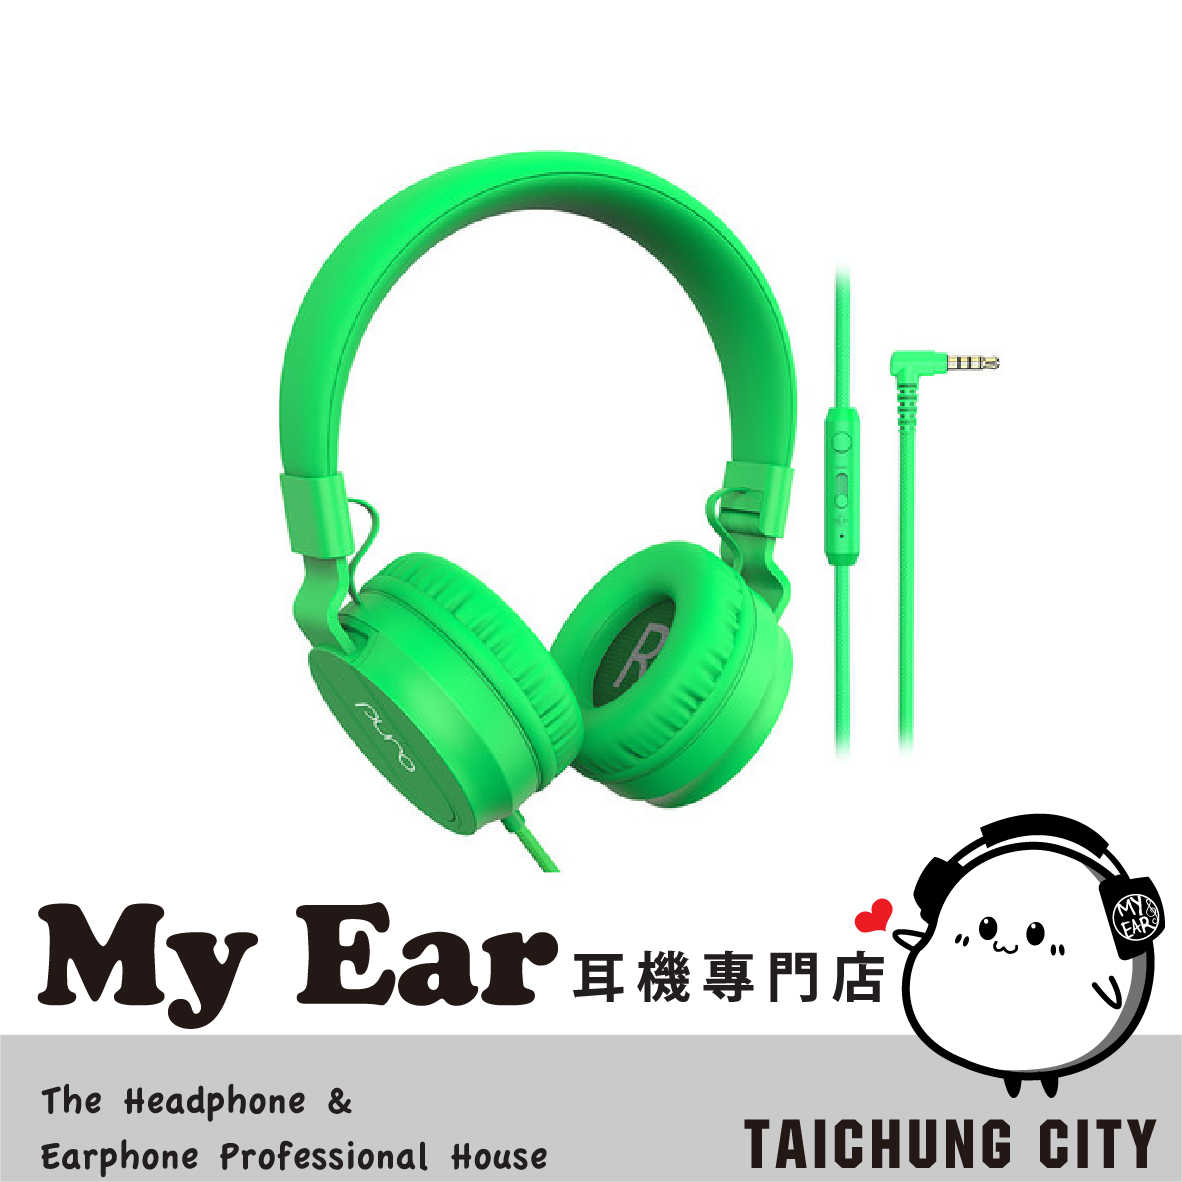 Puro PuroBasic 綠色 安全音量 內建麥克風 兒童耳機 耳罩式耳機 | My Ear 耳機專門店